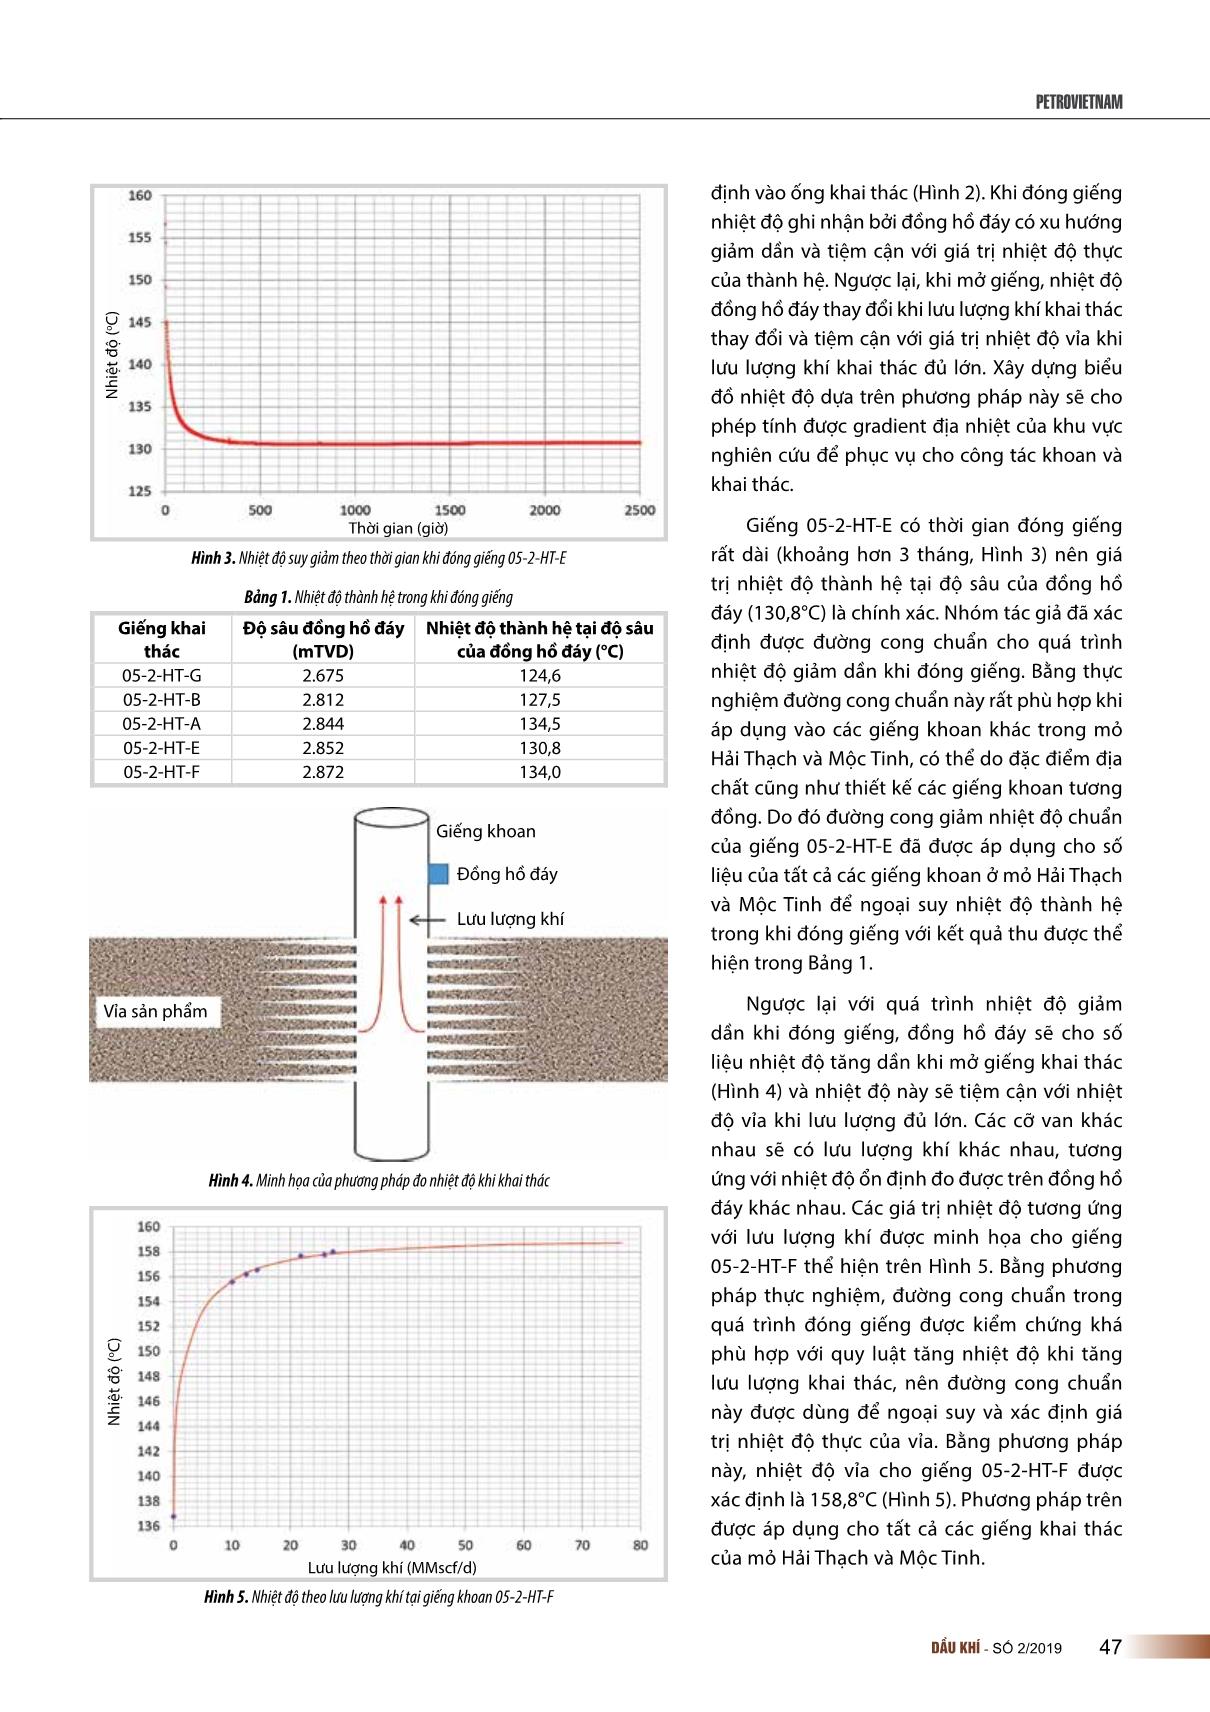 Chính xác hóa dự báo nhiệt độ thành hệ bằng cách sử dụng dữ liệu đồng hồ đáy ở các mỏ có nhiệt độ cao, áp suất cao Hải Thạch và Mộc Tinh bể Nam Côn Sơn, thềm lục địa Việt Nam trang 3